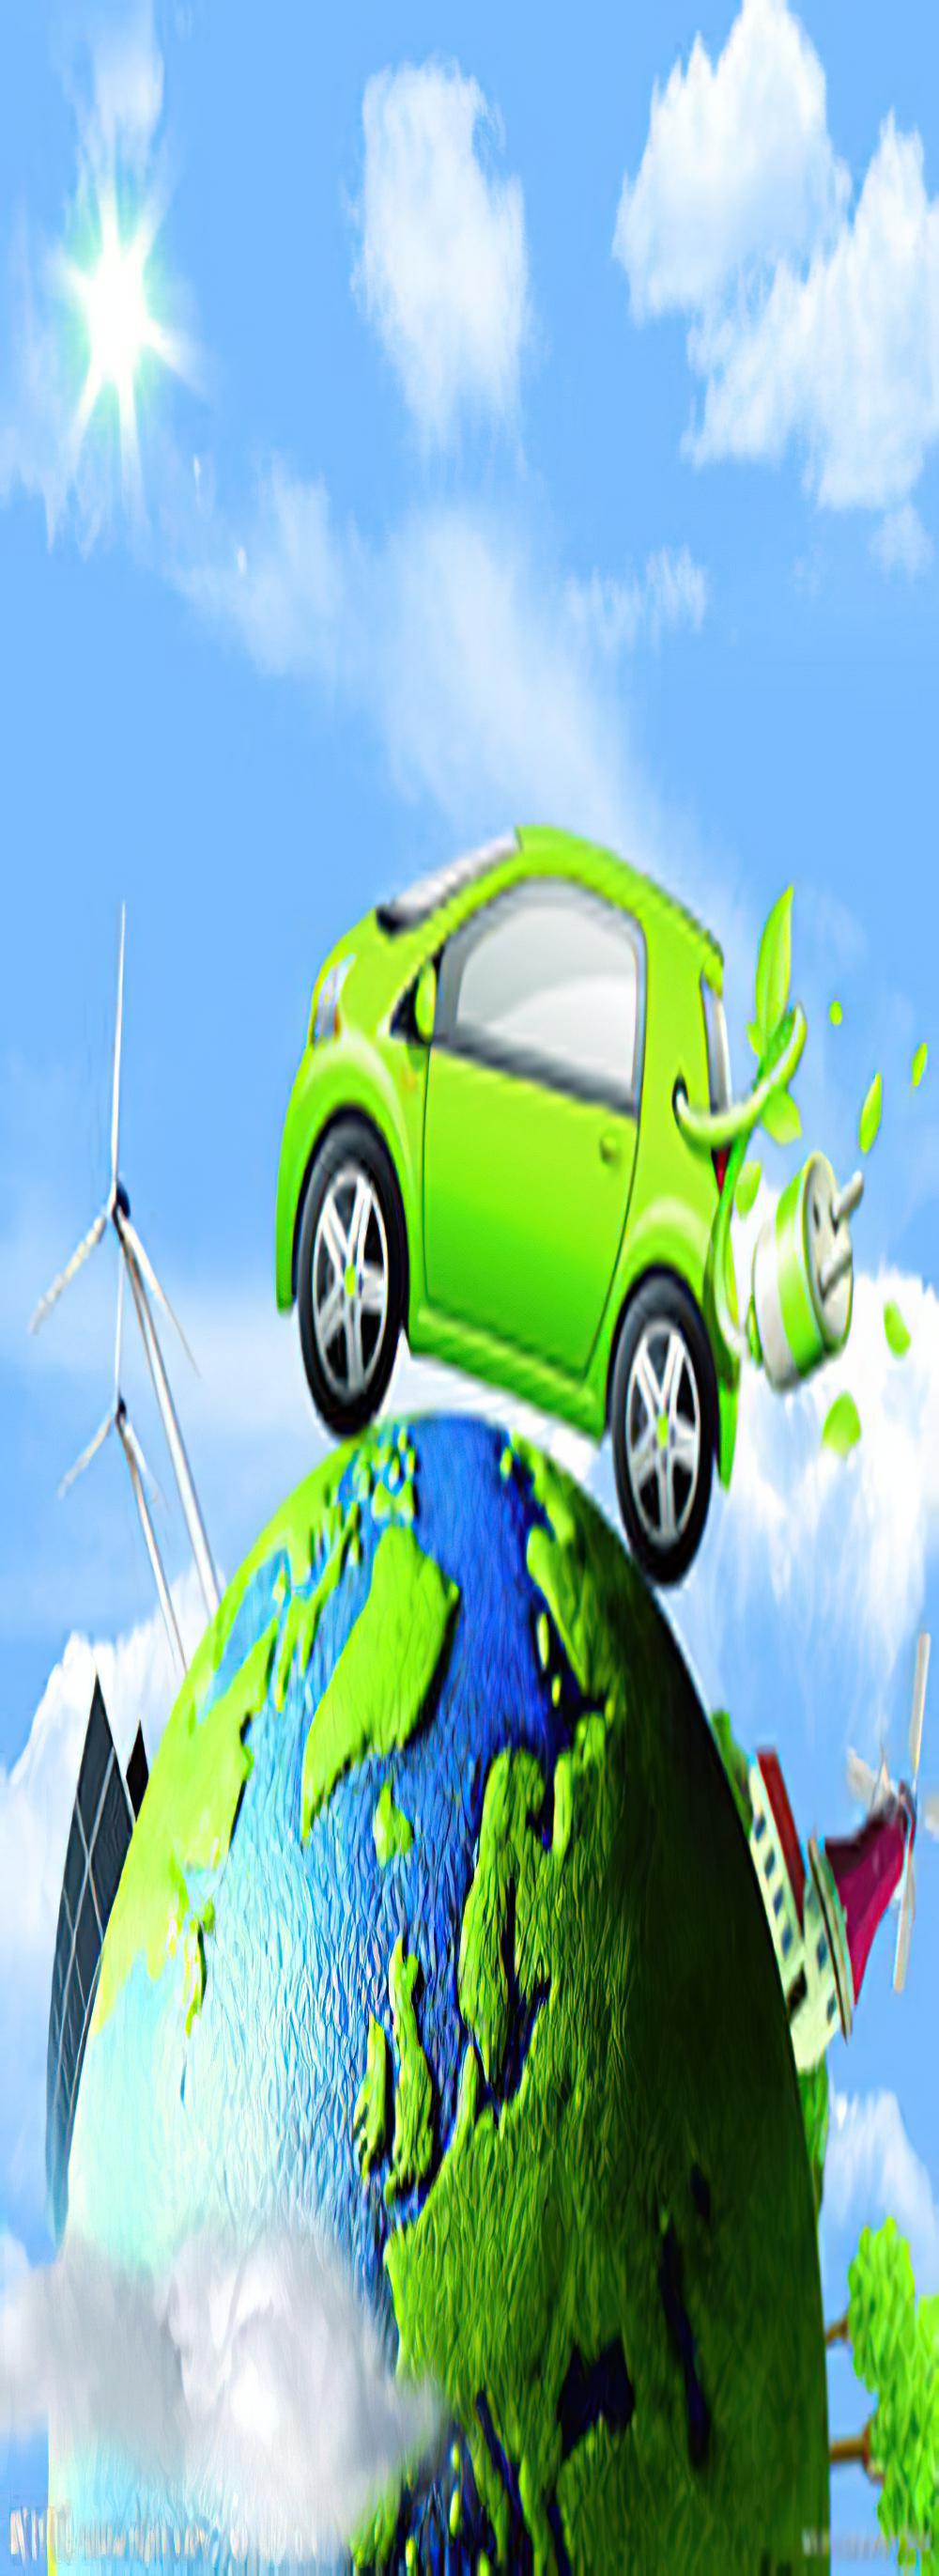 2013中国低碳交通及新能源汽车展览会